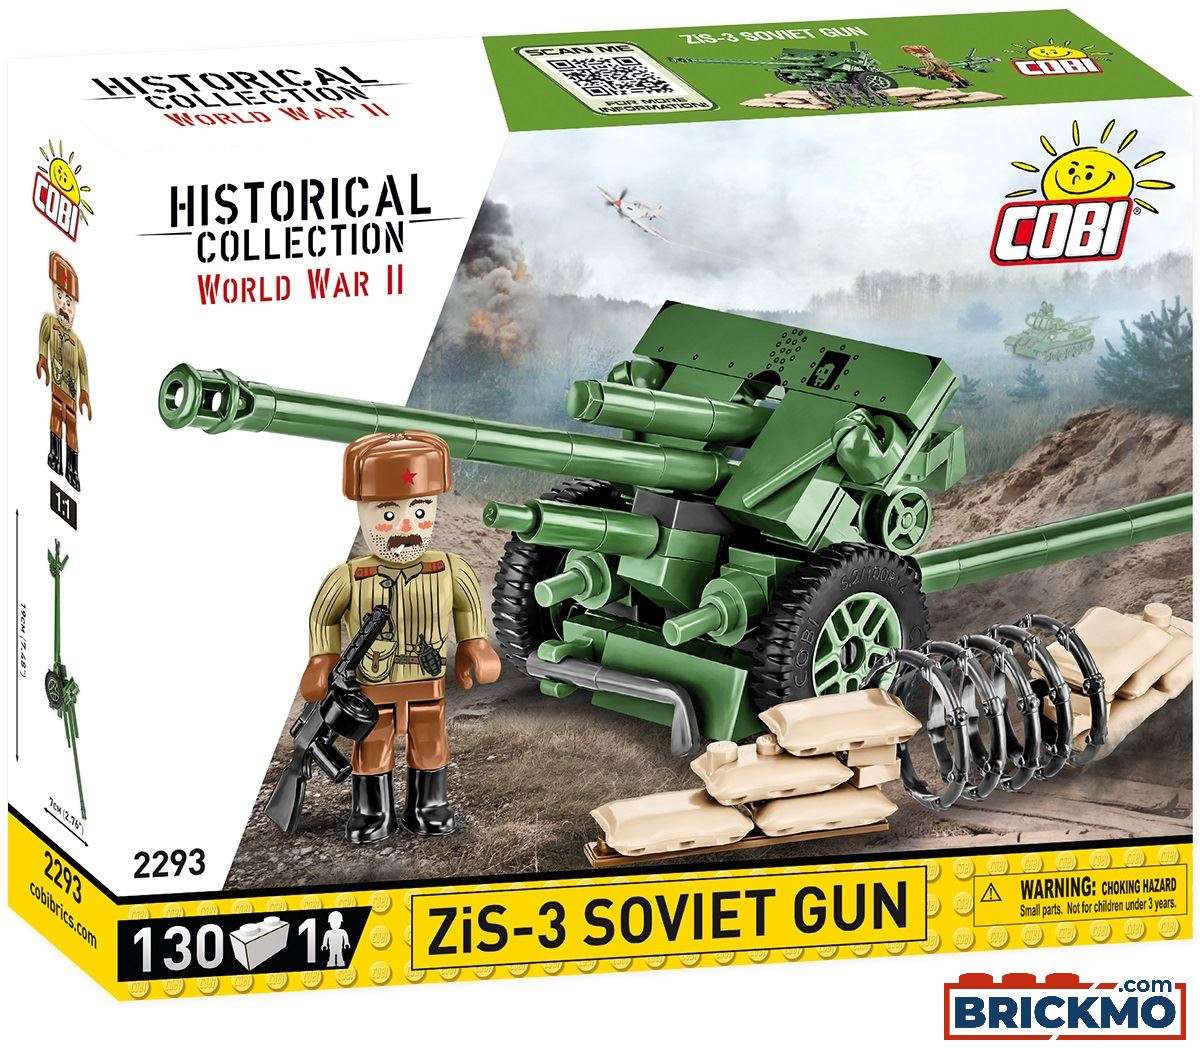 Cobi Historical Collection World War II 2293 ZIS-3 Soviet Gun 2293